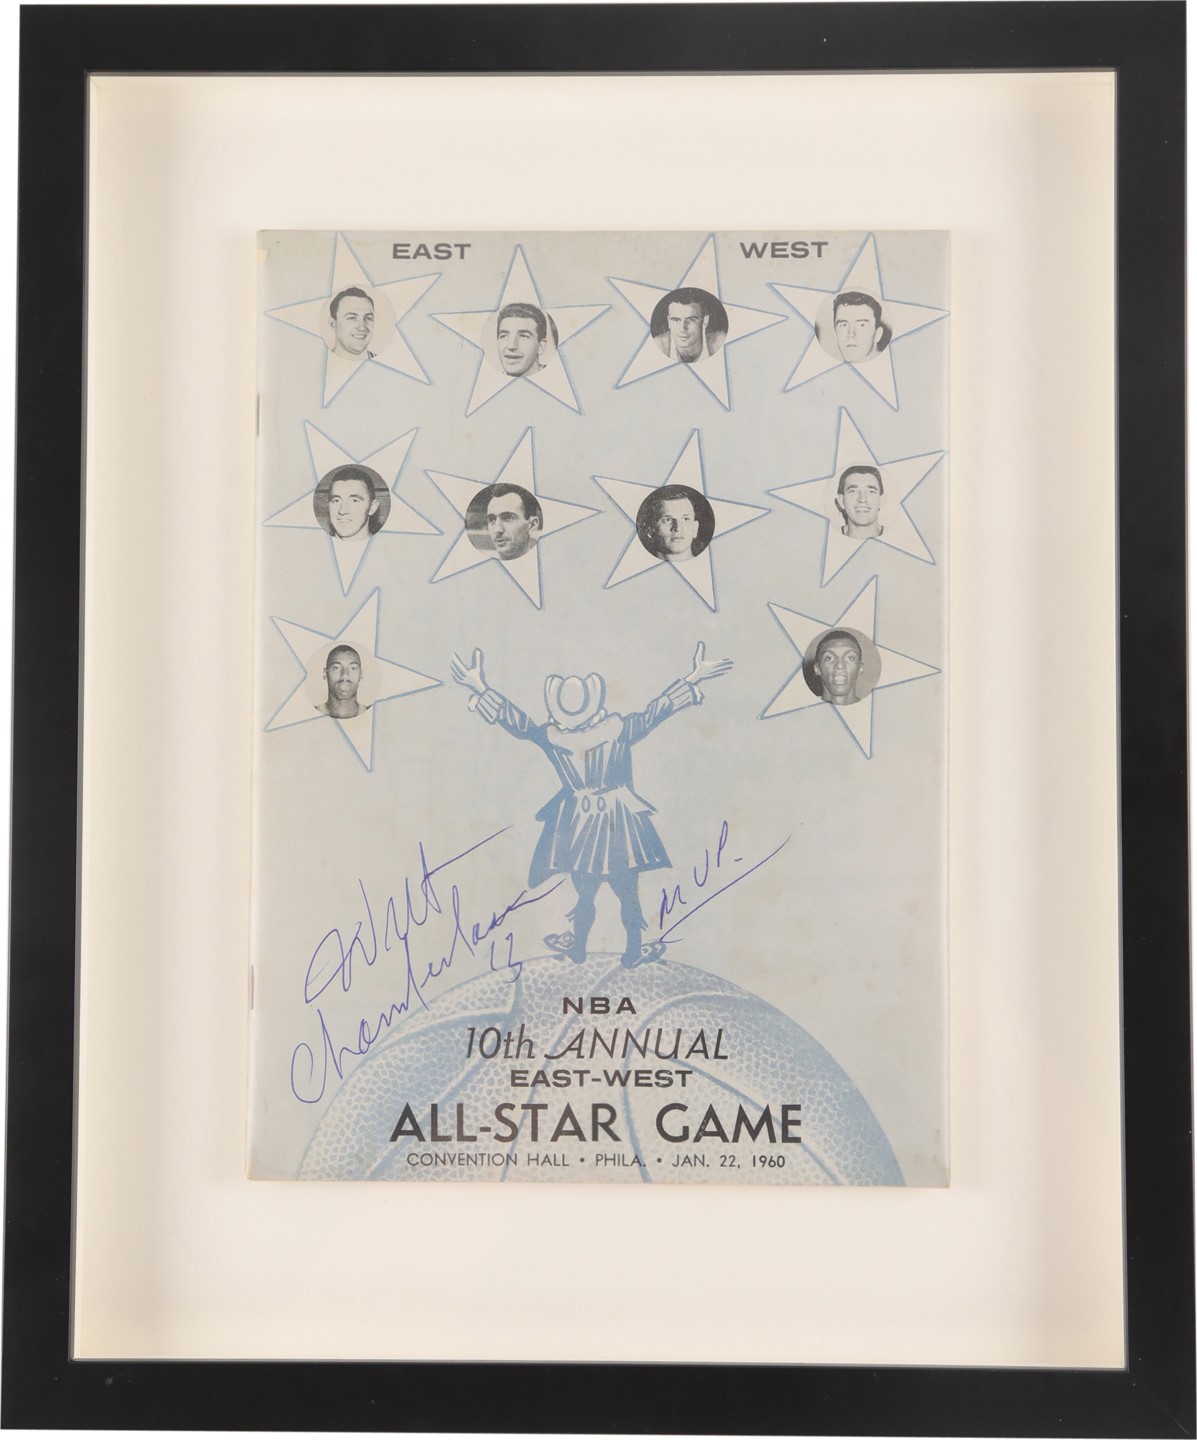 - 1960 Wilt Chamberlain Signed NBA All Star Game Program with "MVP" Inscription (PSA)